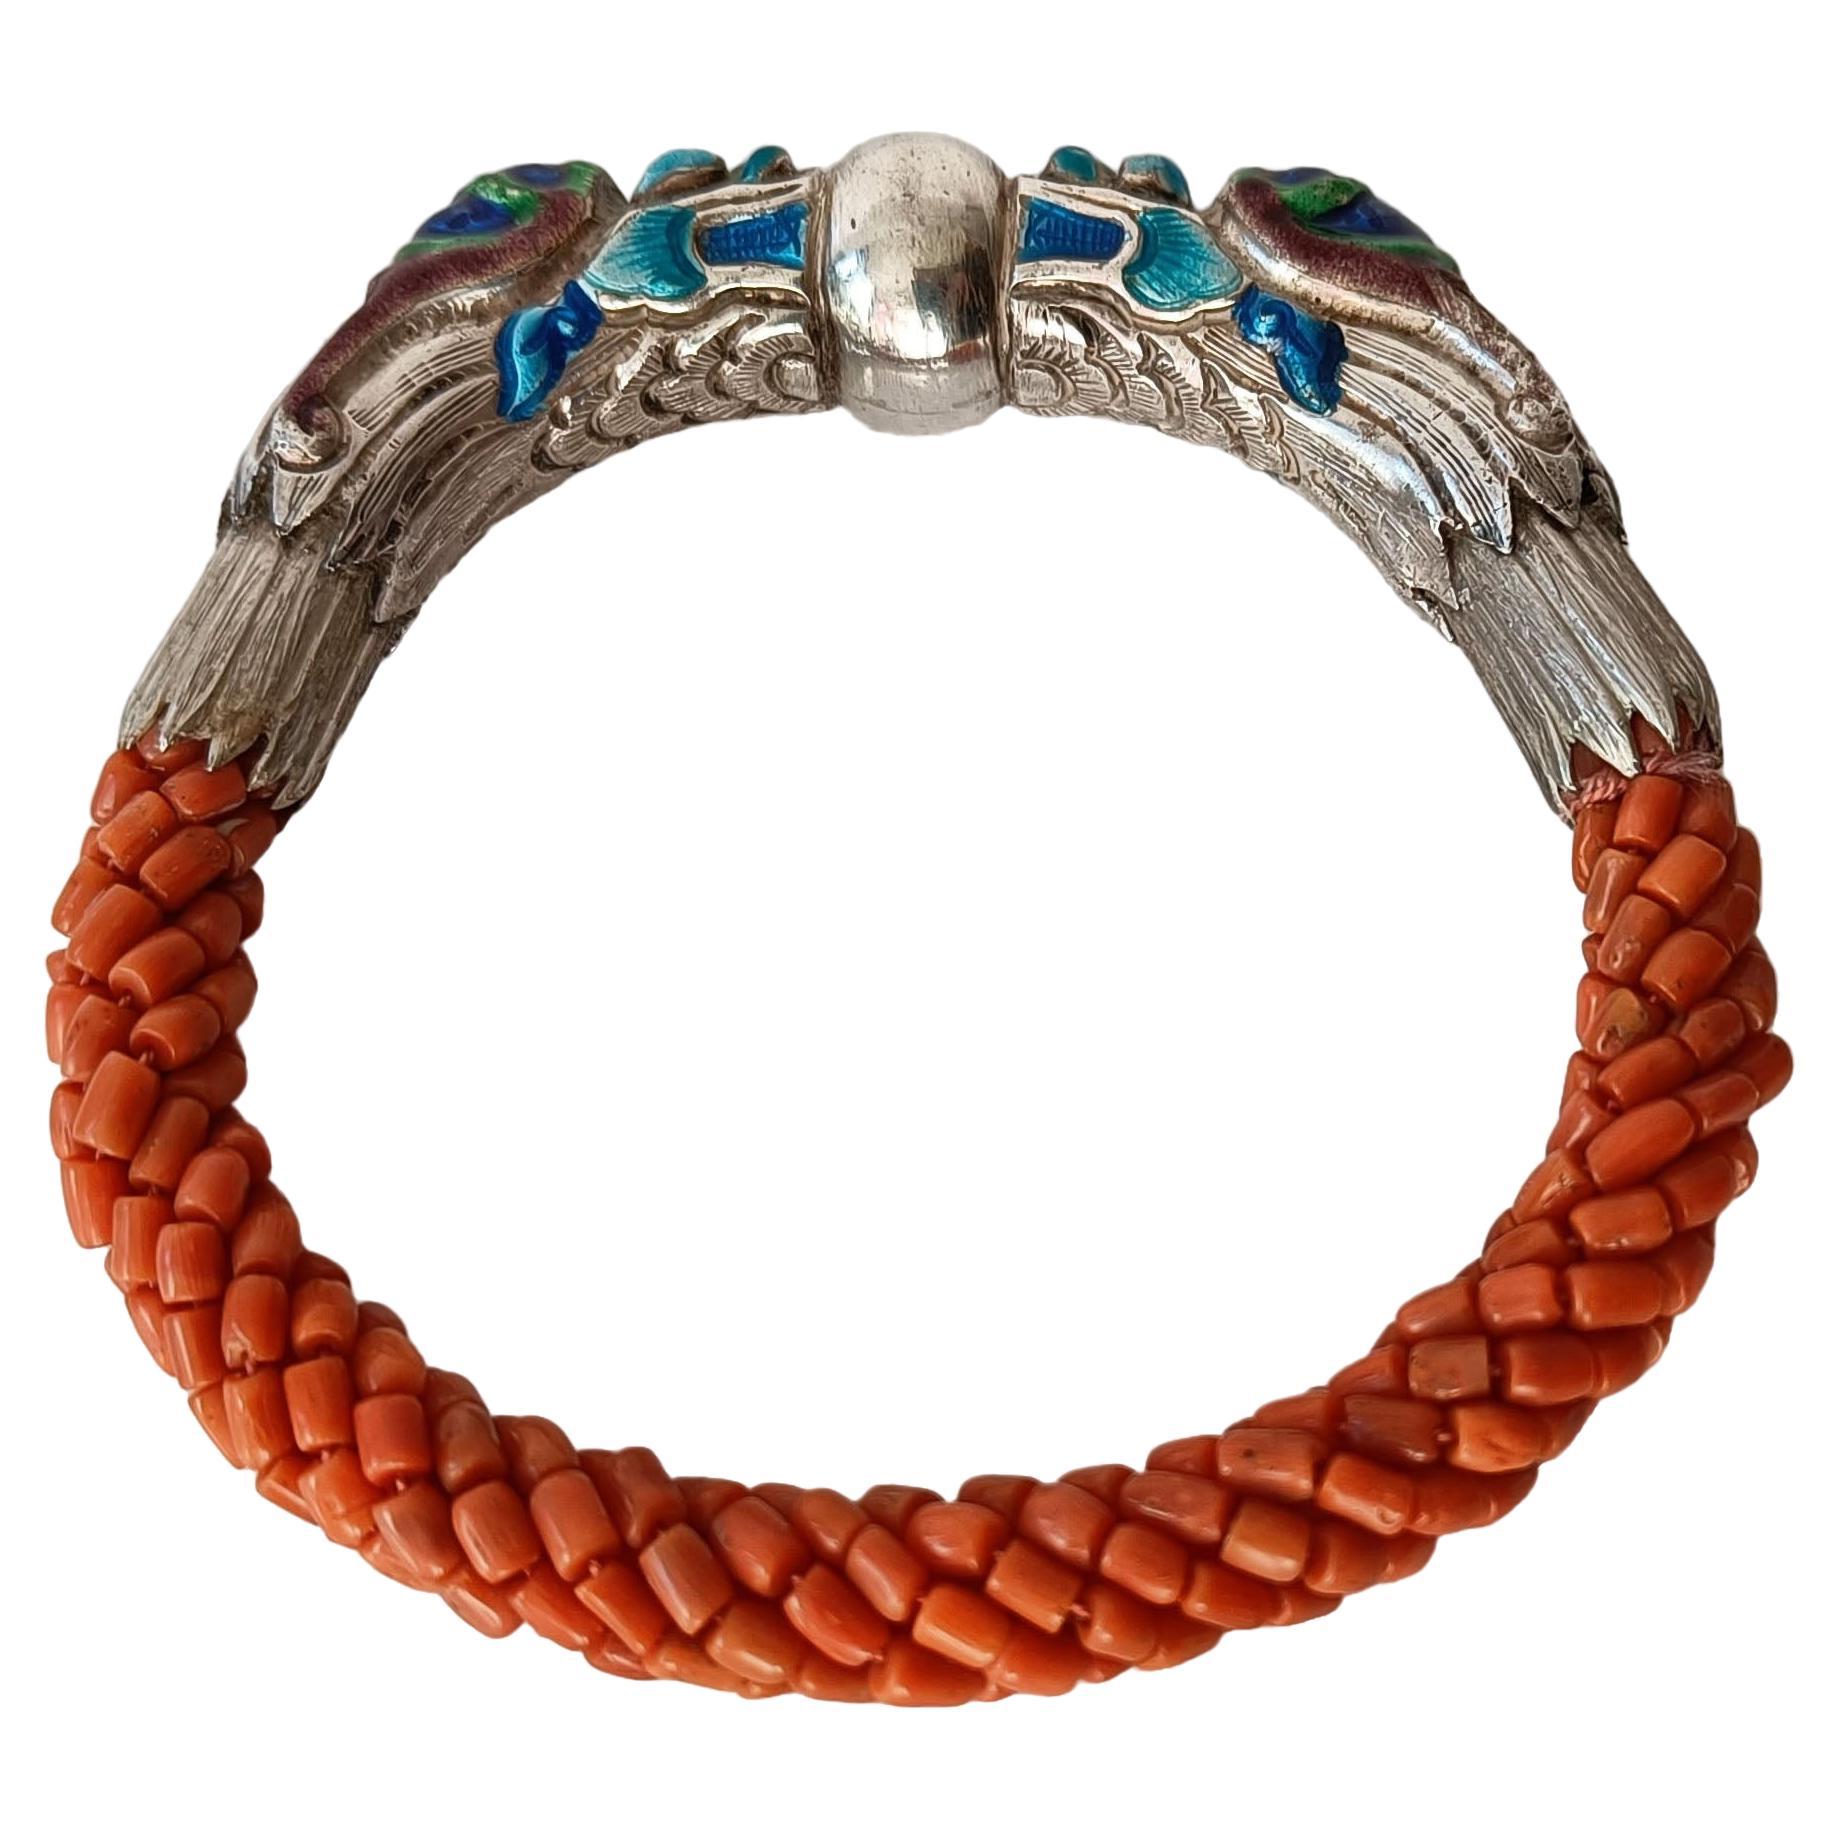 Magnifique bracelet dragon ethnique chinois vintage en argent émaillé et corail